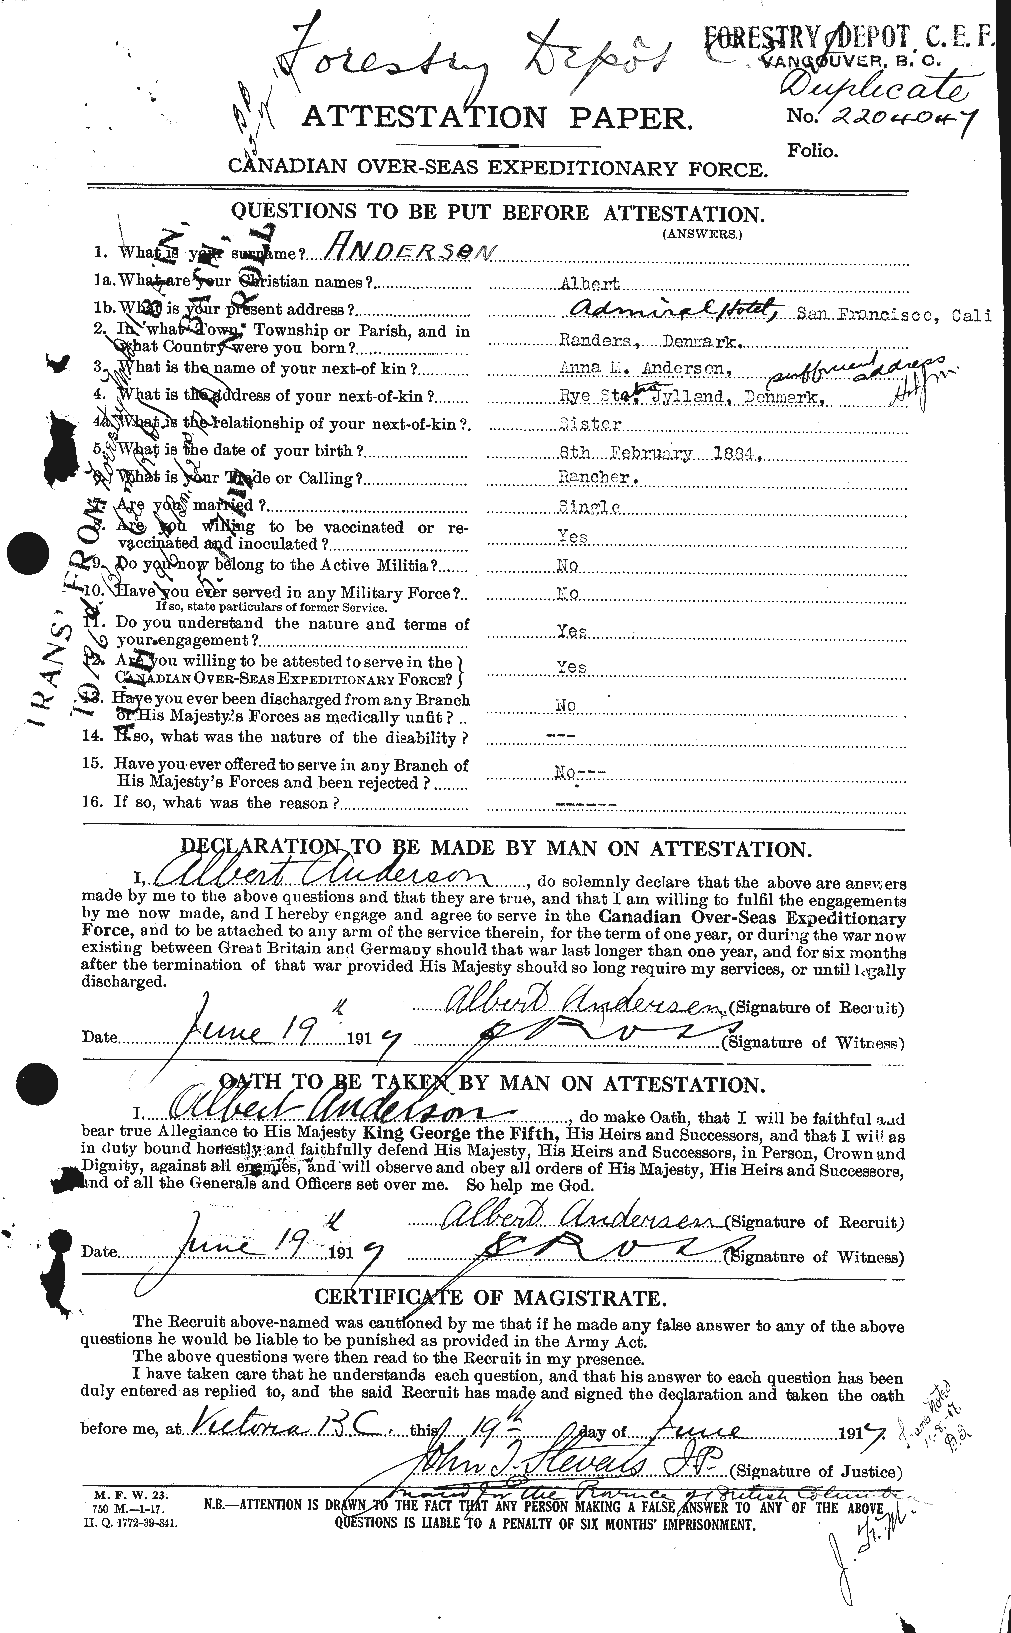 Dossiers du Personnel de la Première Guerre mondiale - CEC 209553a